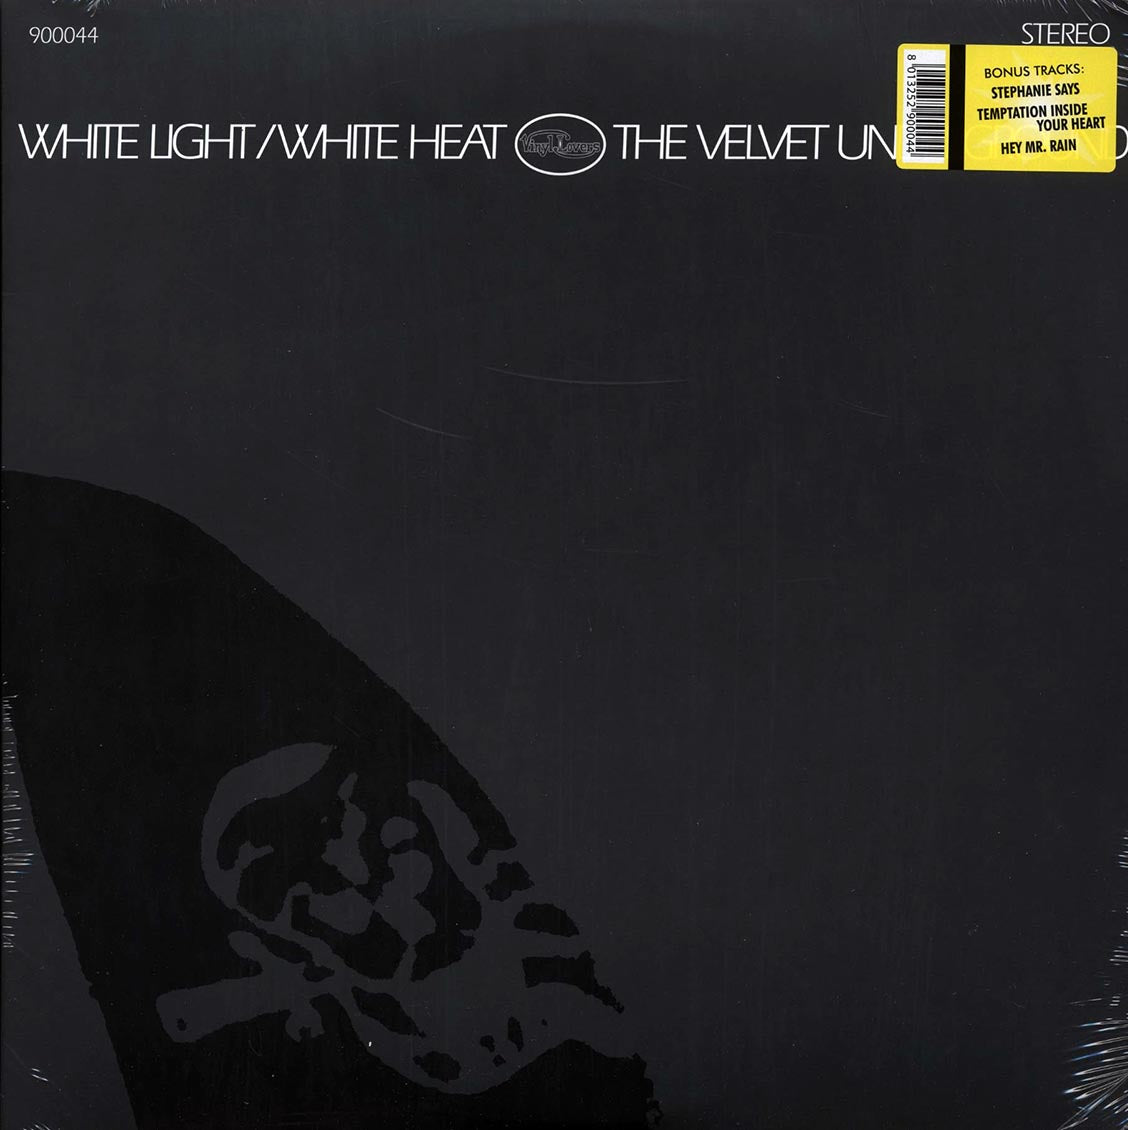 The Velvet Underground - White Light/White Heat [2008 Reissue 180G] [New Vinyl Record LP]